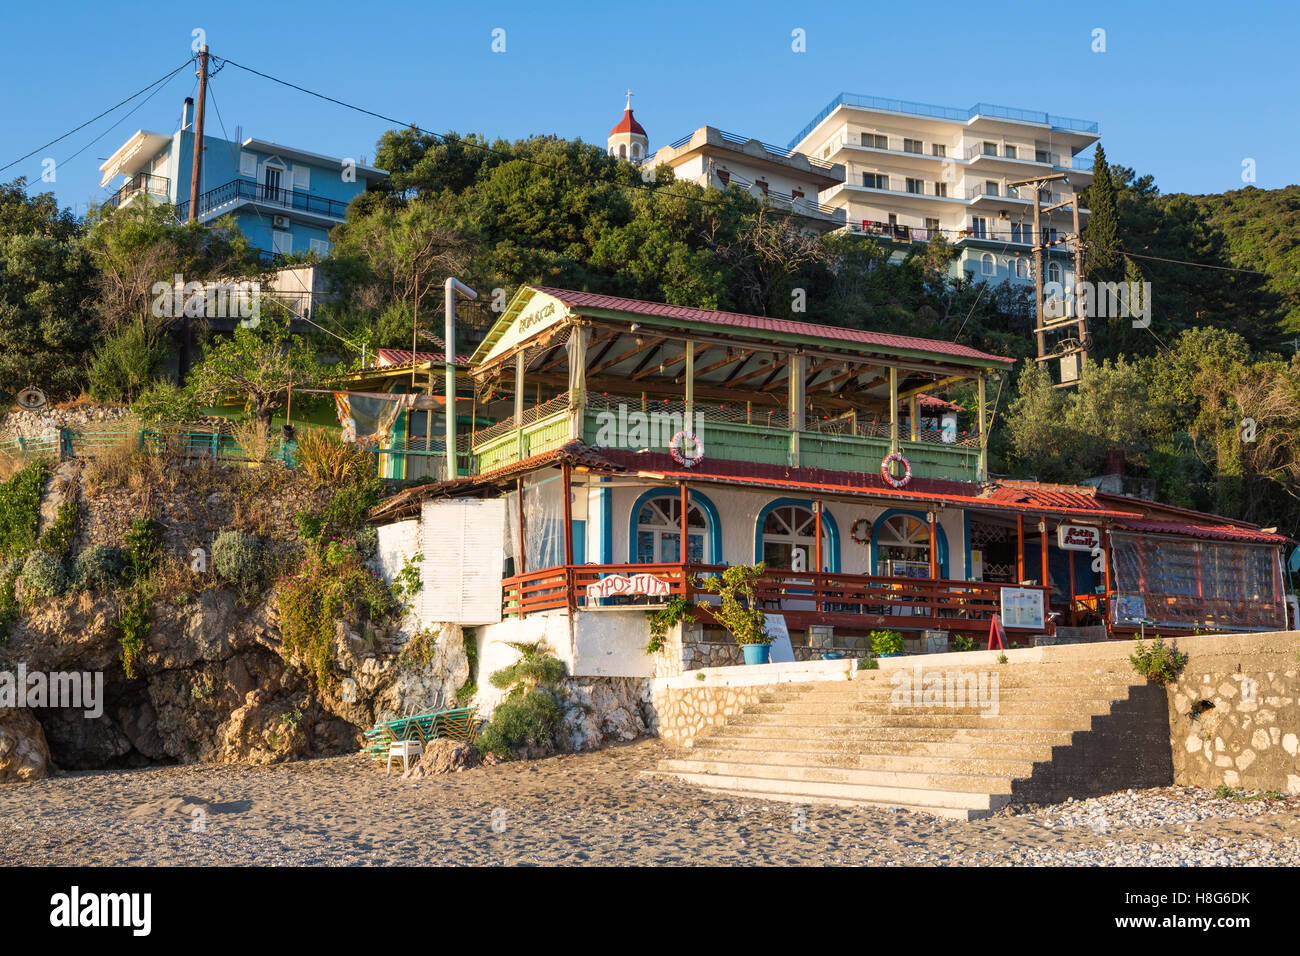 A Taverna on the beach at Poros, Kefalonia. Stock Photo